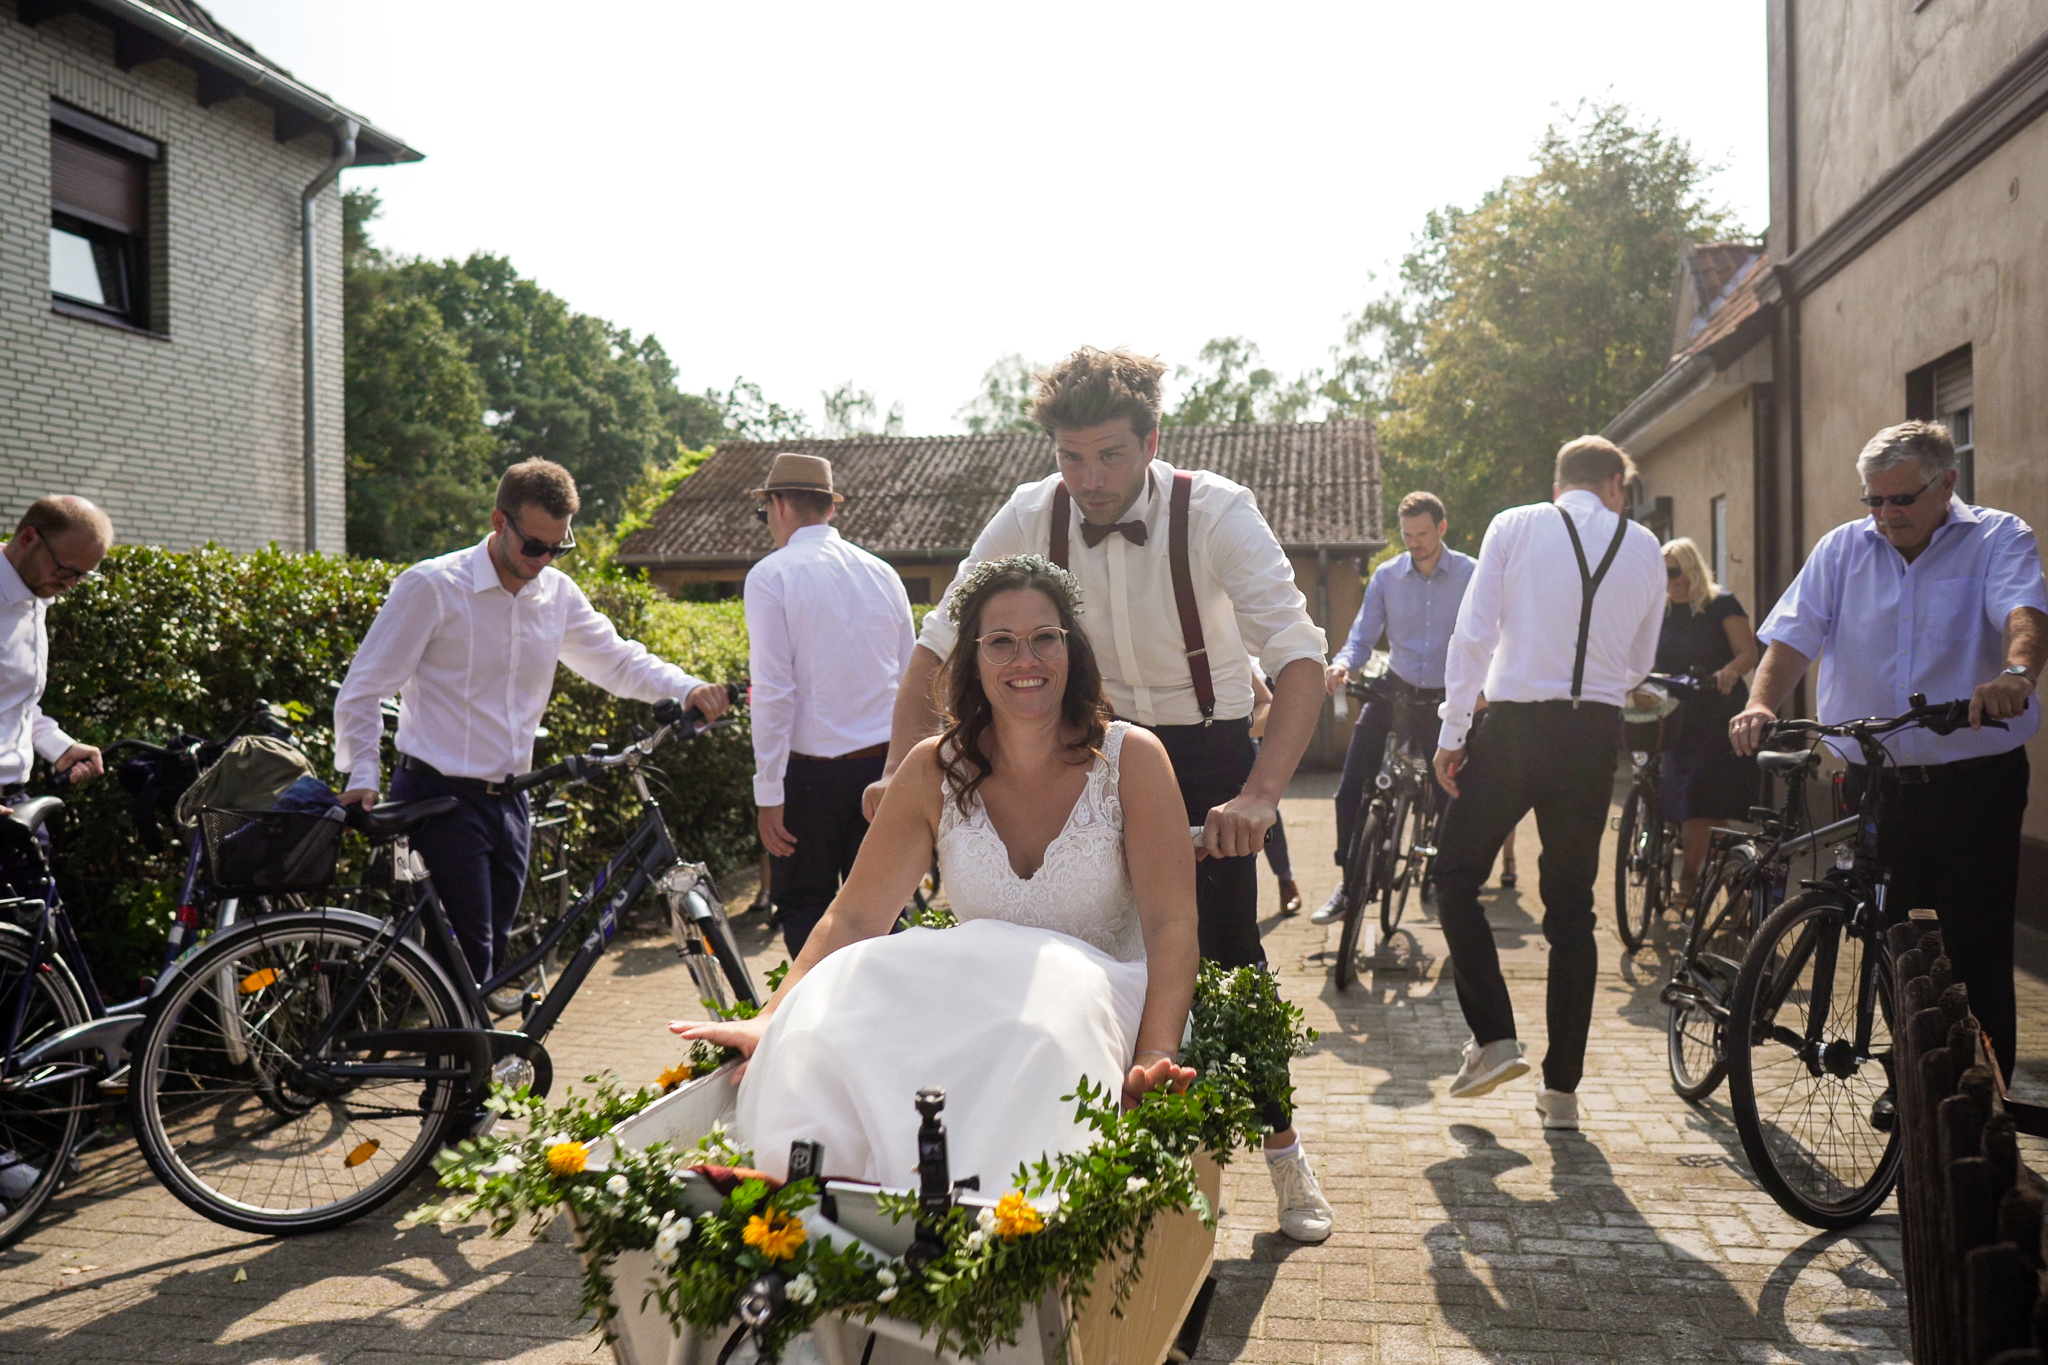 Mit dem Fahrrad zur Hochzeit